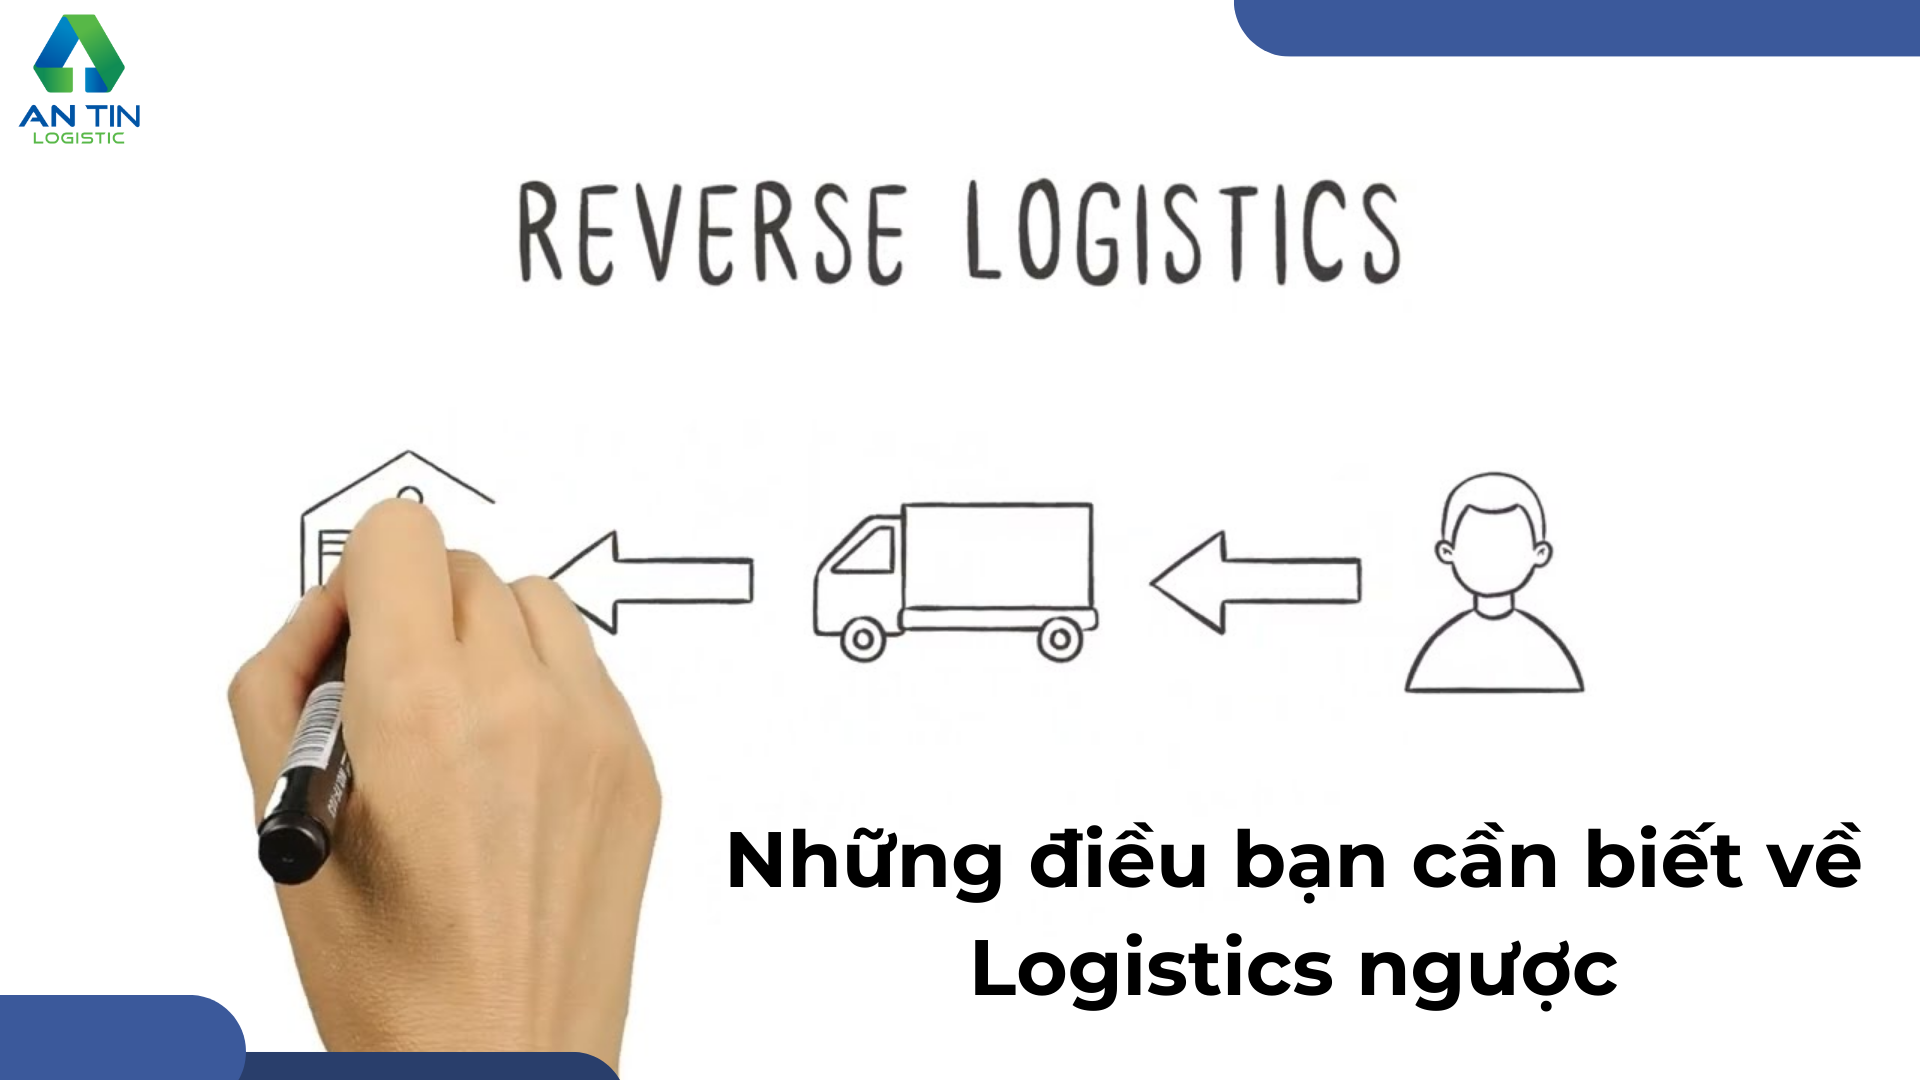 Ưu và nhược điểm của Logistics ngược là gì?